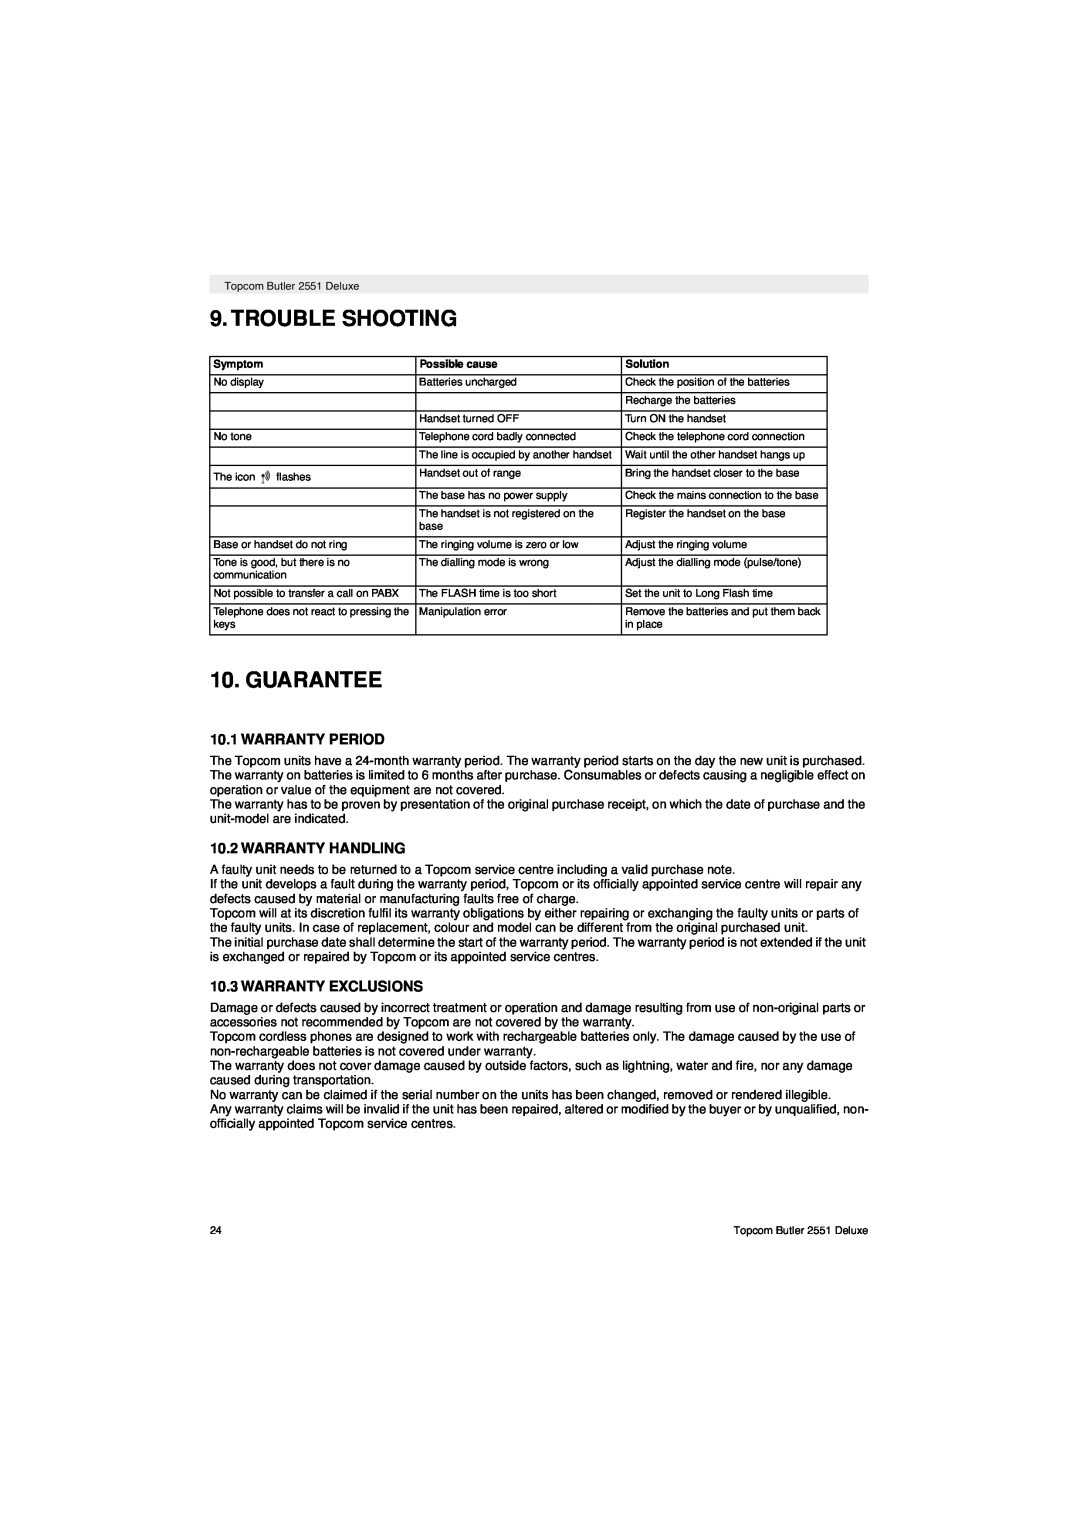 Topcom 2551 manual Trouble Shooting, Guarantee, Warranty Period, Warranty Handling, Warranty Exclusions 